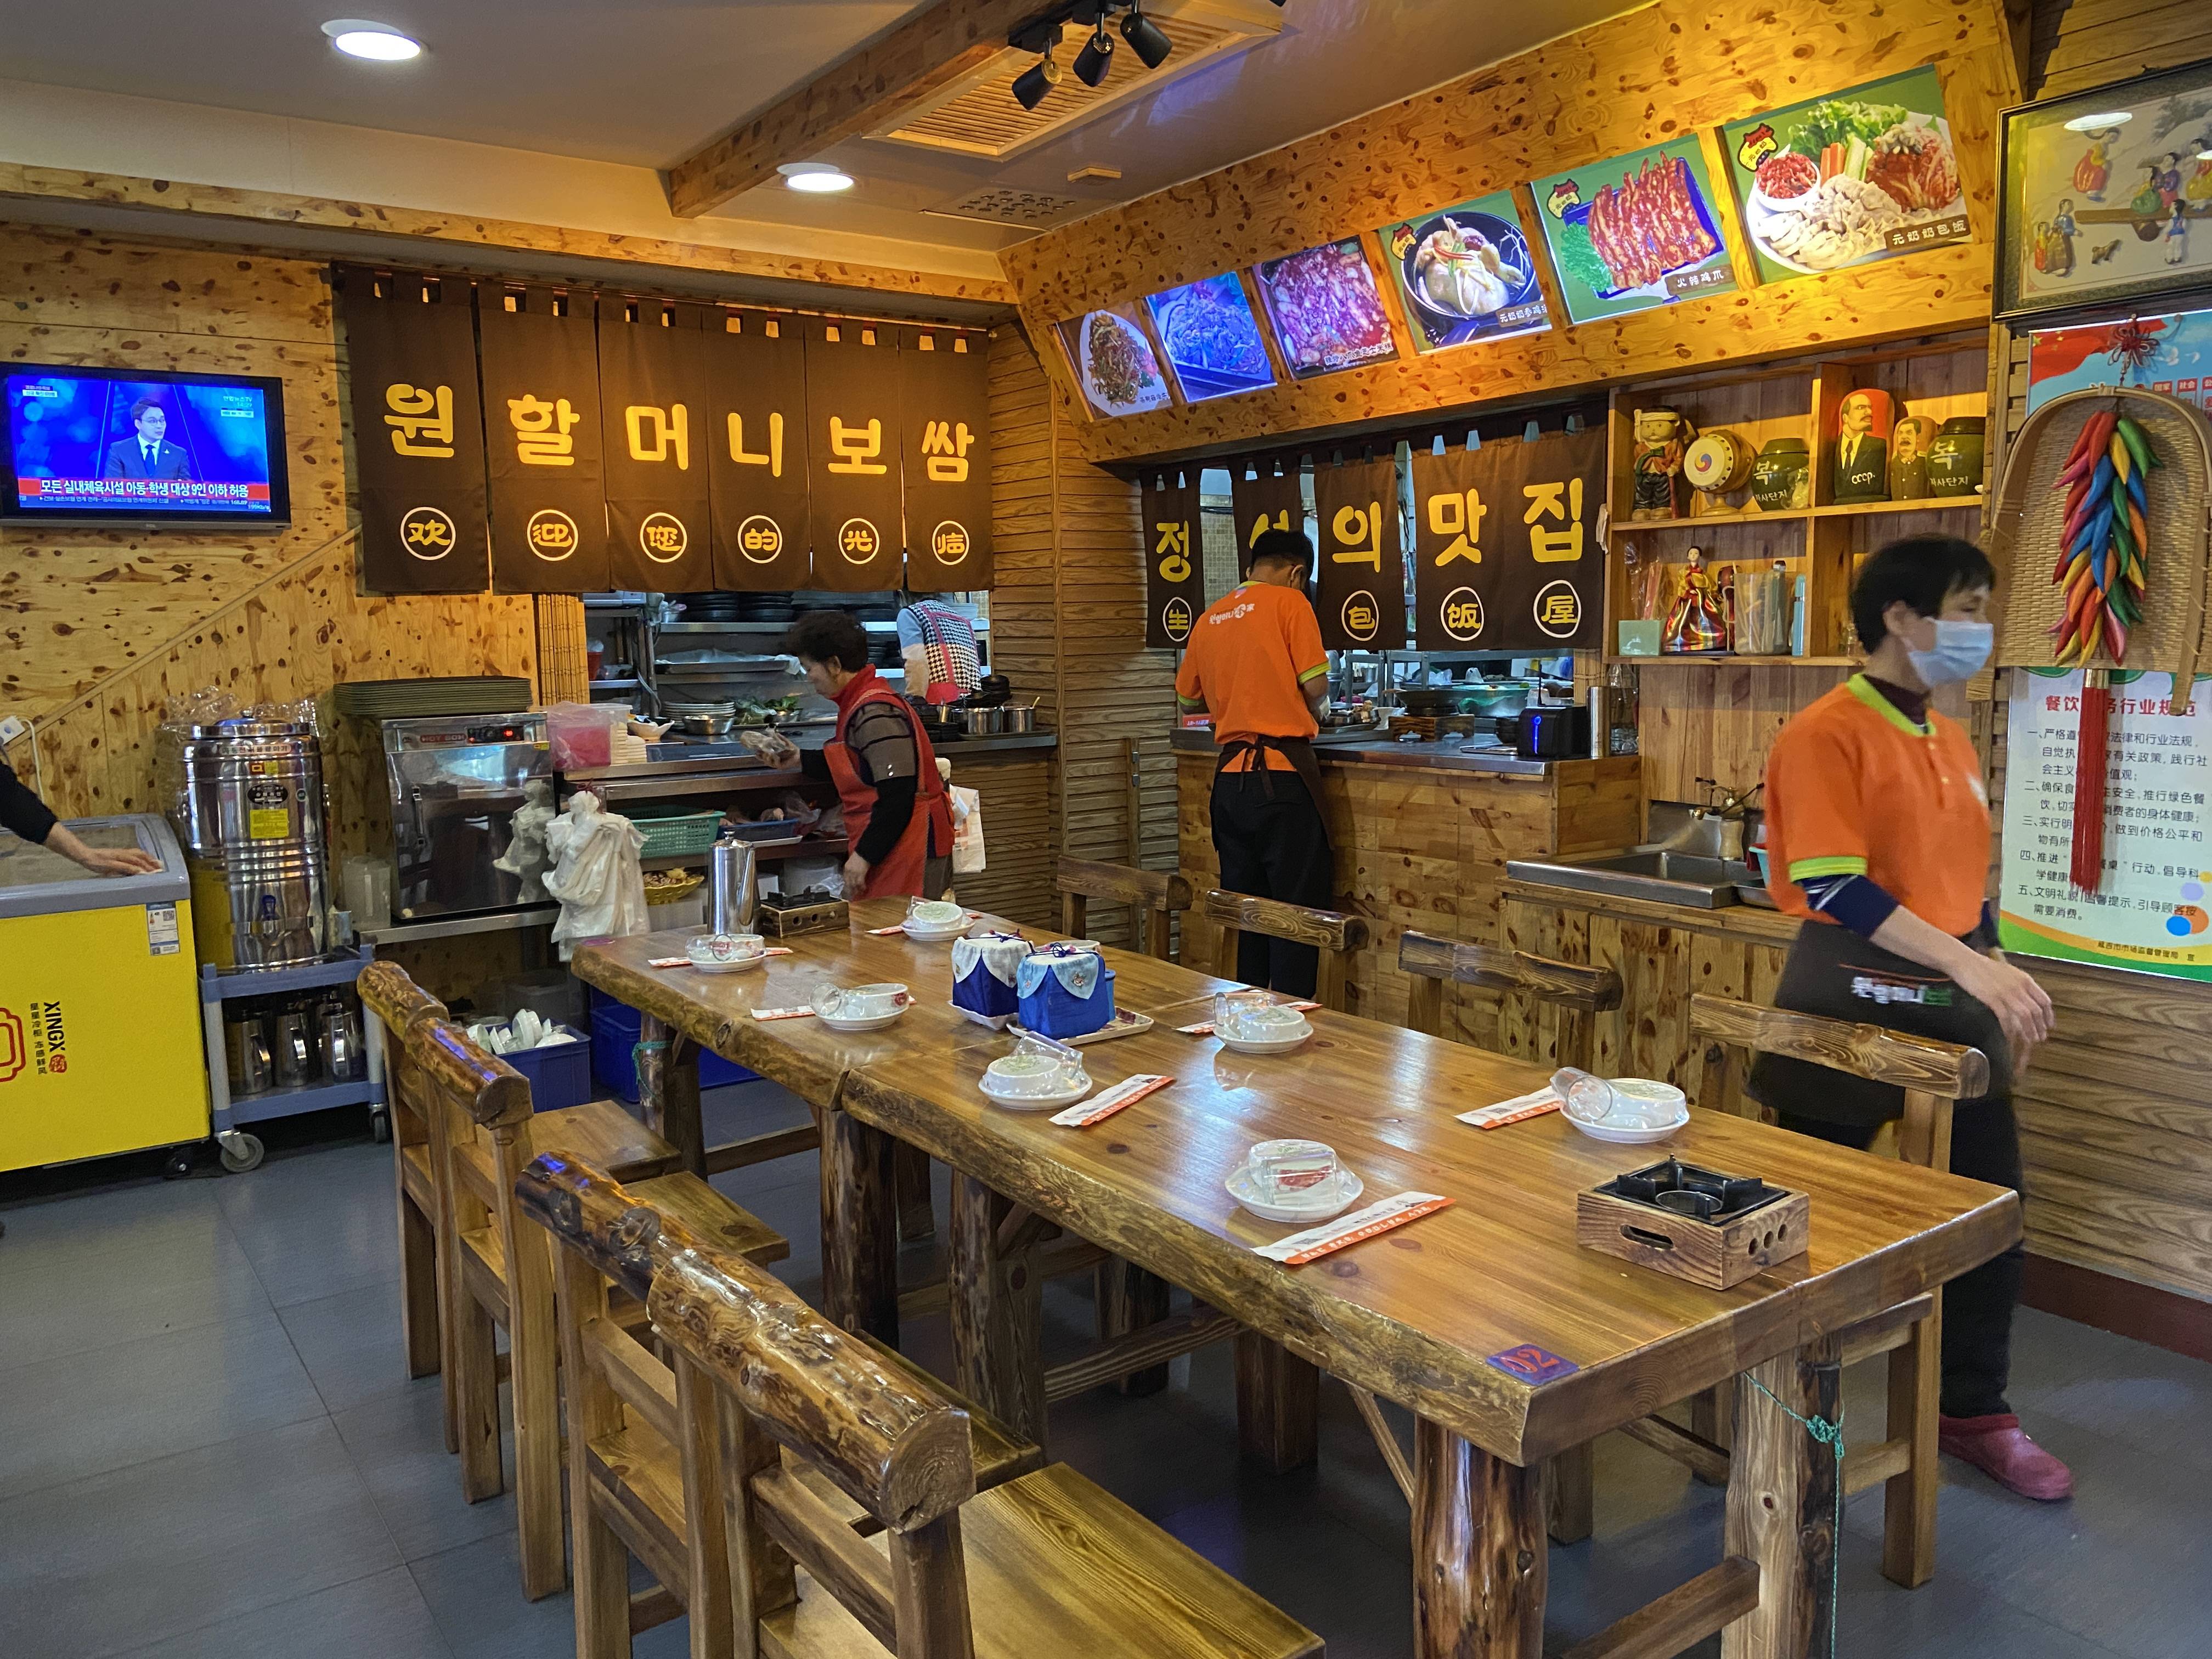 延吉的网红饭店,在延吉美食必吃榜上排前五,是游客的首选打卡店